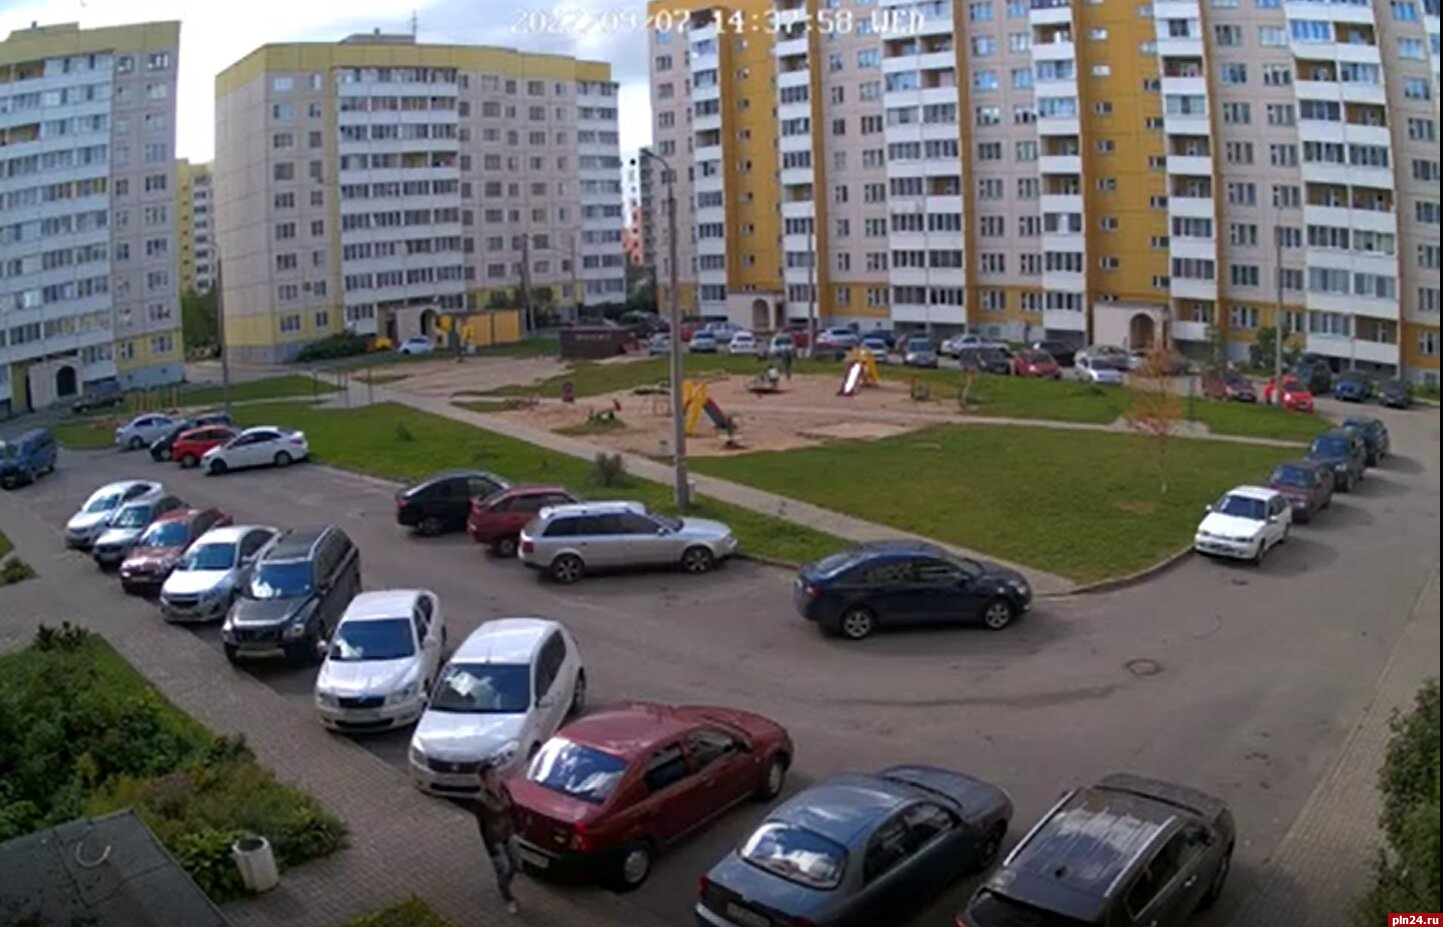 Опубликовано видео падения мужчины из окна дома на улице Юности в Пскове. 18+